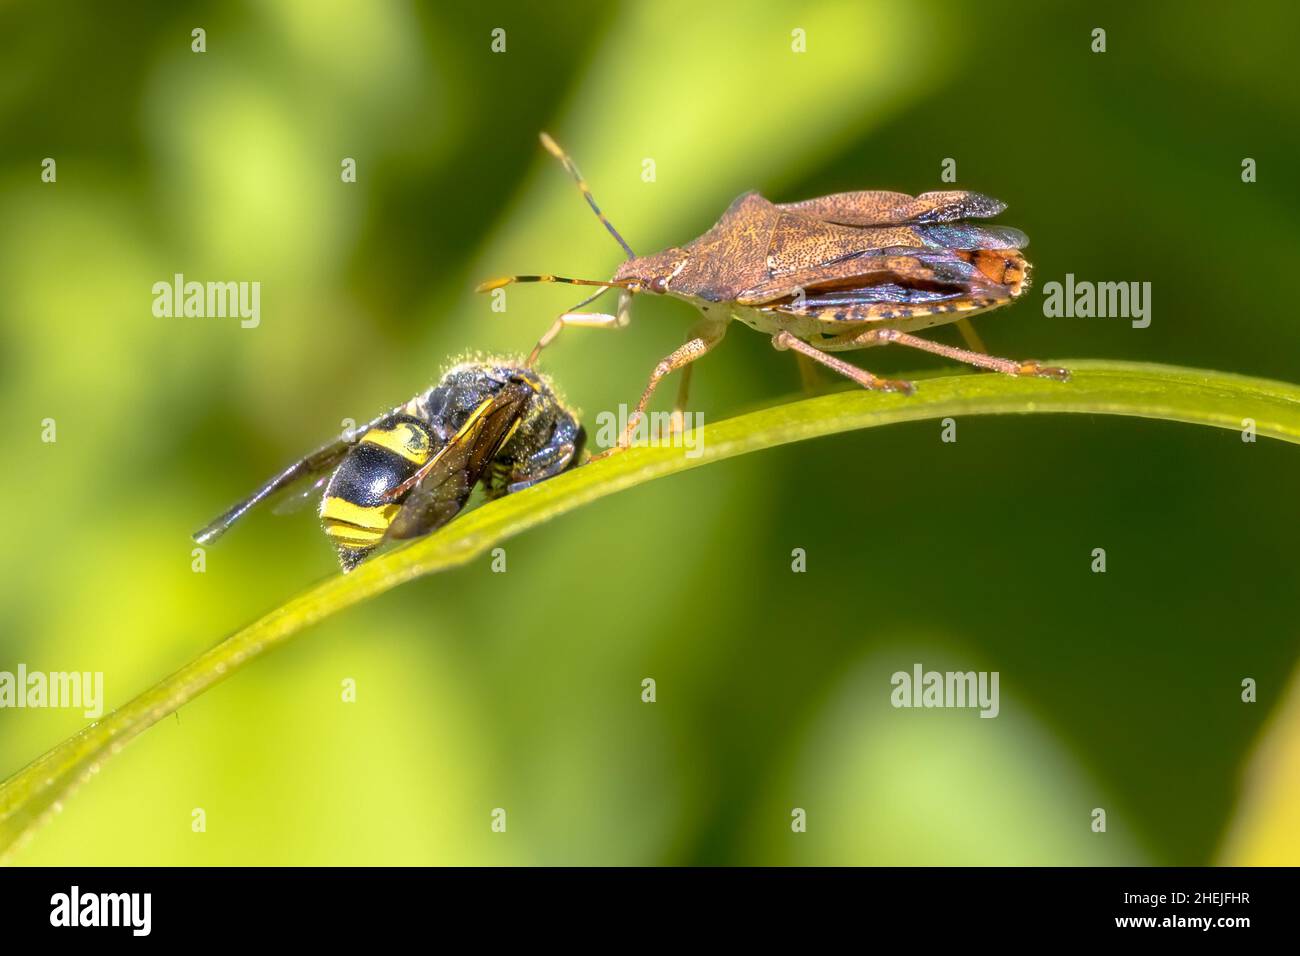 Heteroptera con preda alla vespa. Questo insetto è un vero e proprio scarabeo predatore che predica su altri insetti. Scena della fauna selvatica in natura d'Europa. Paesi Bassi. Foto Stock